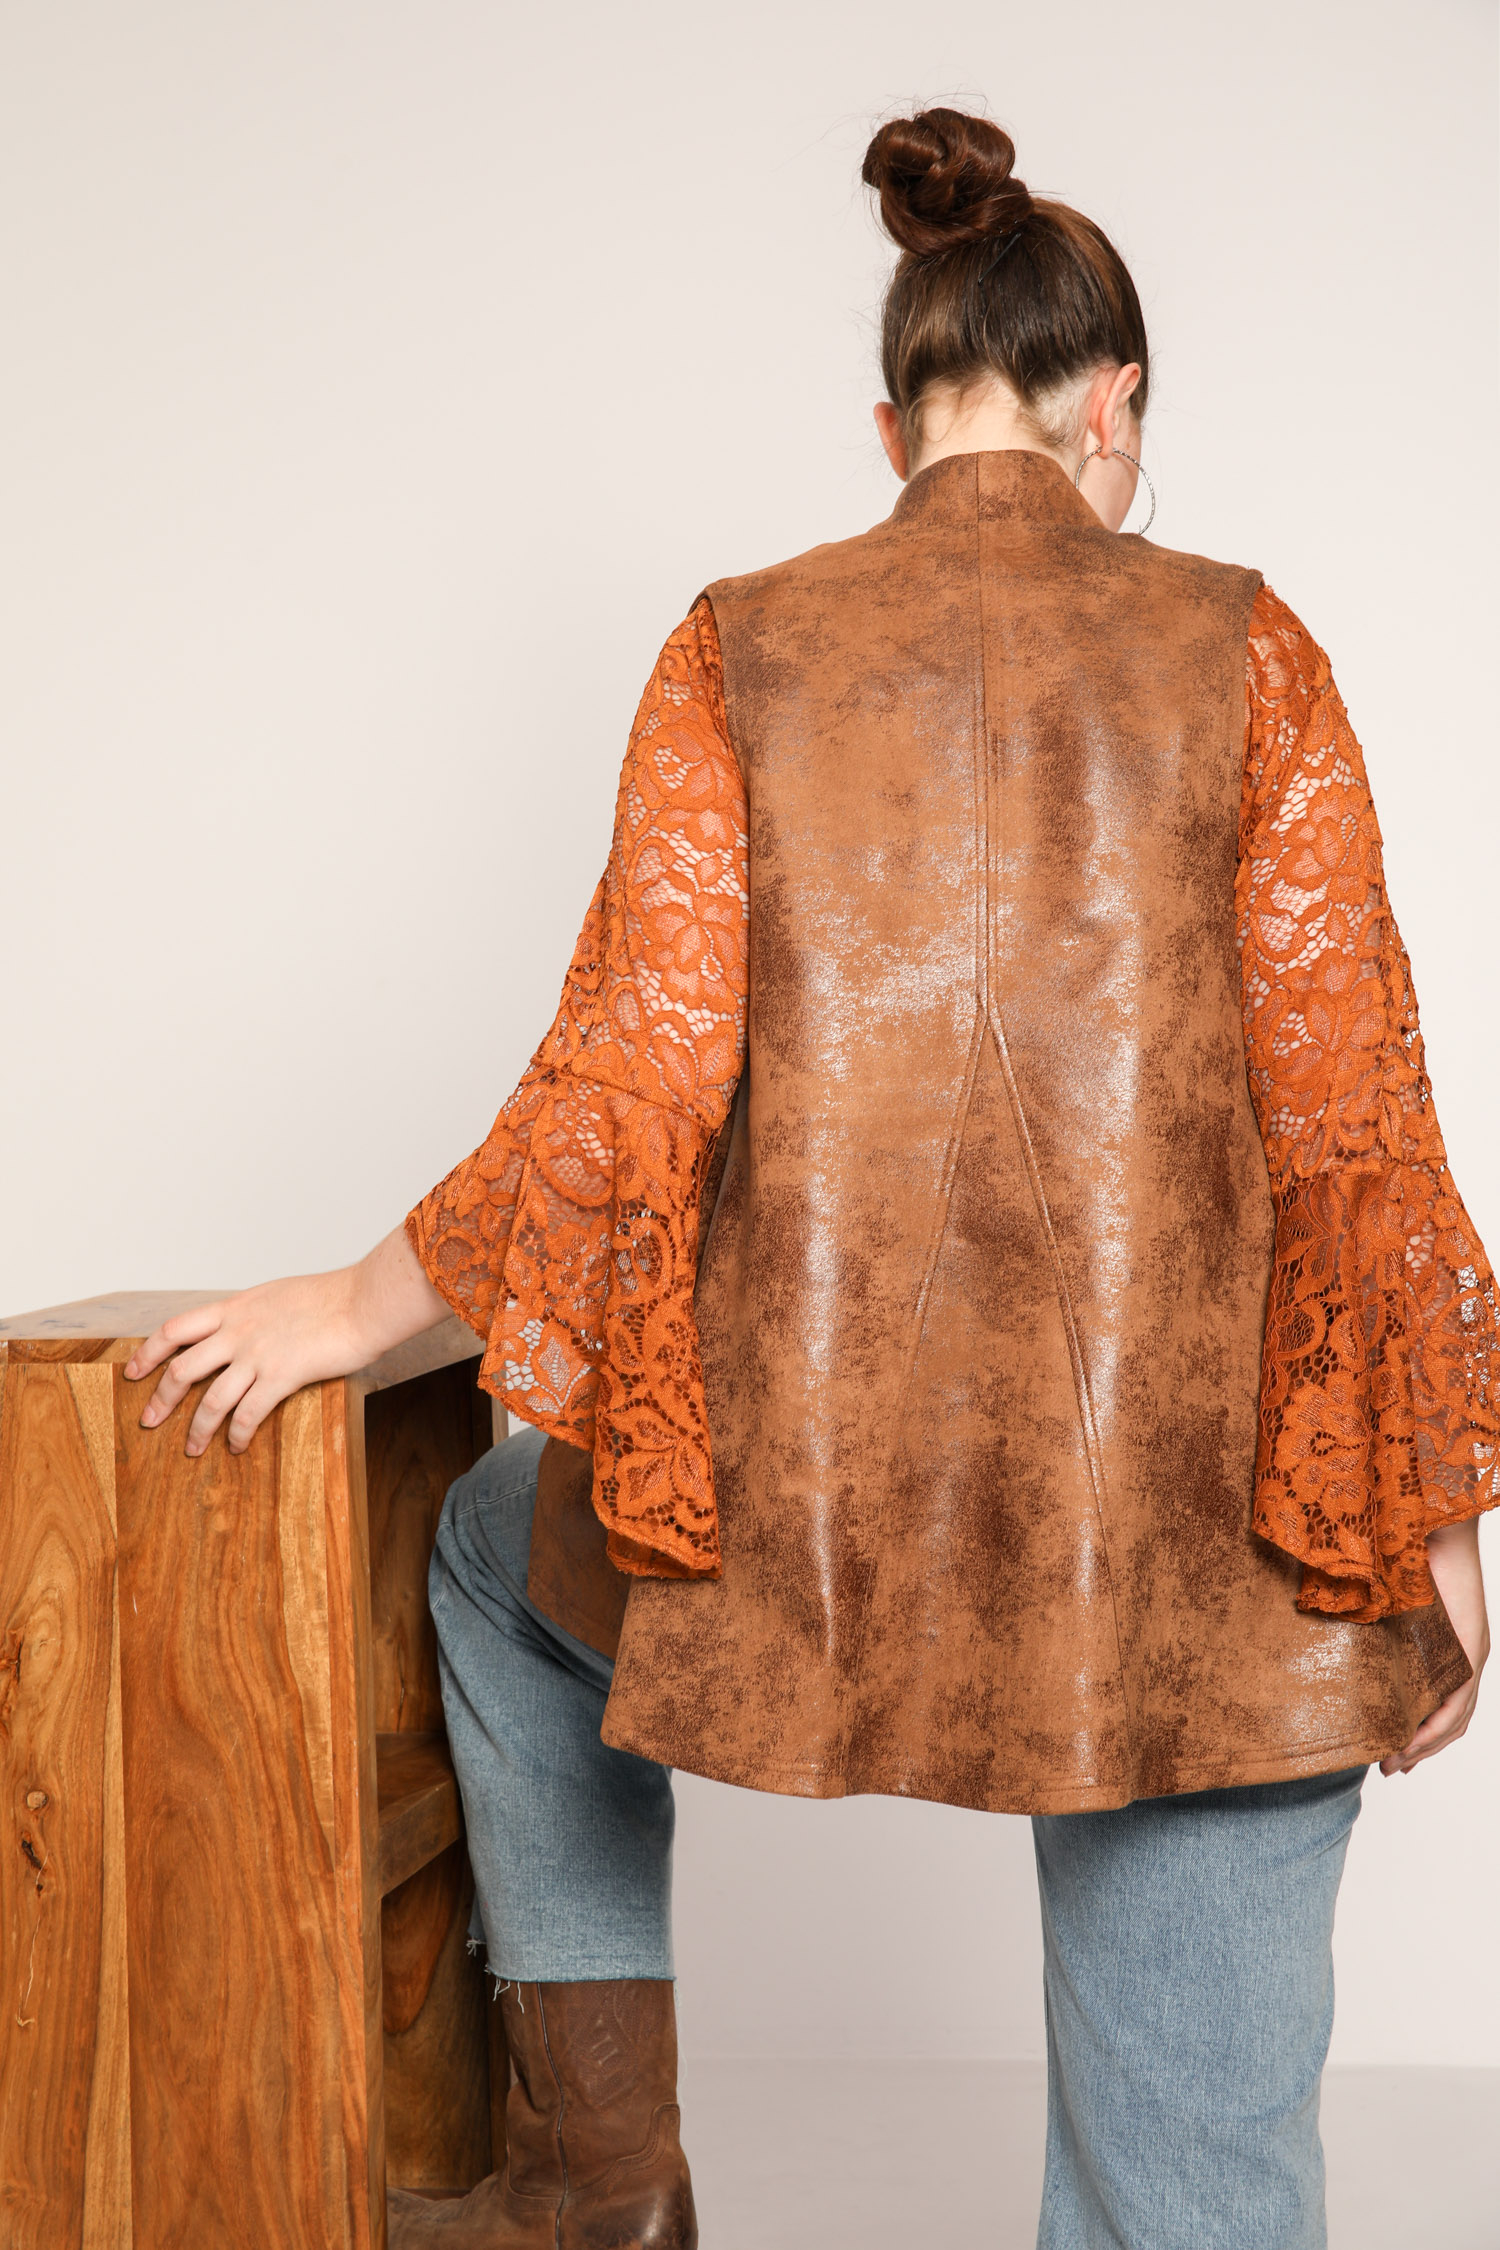 Sleeveless vegan leather jacket